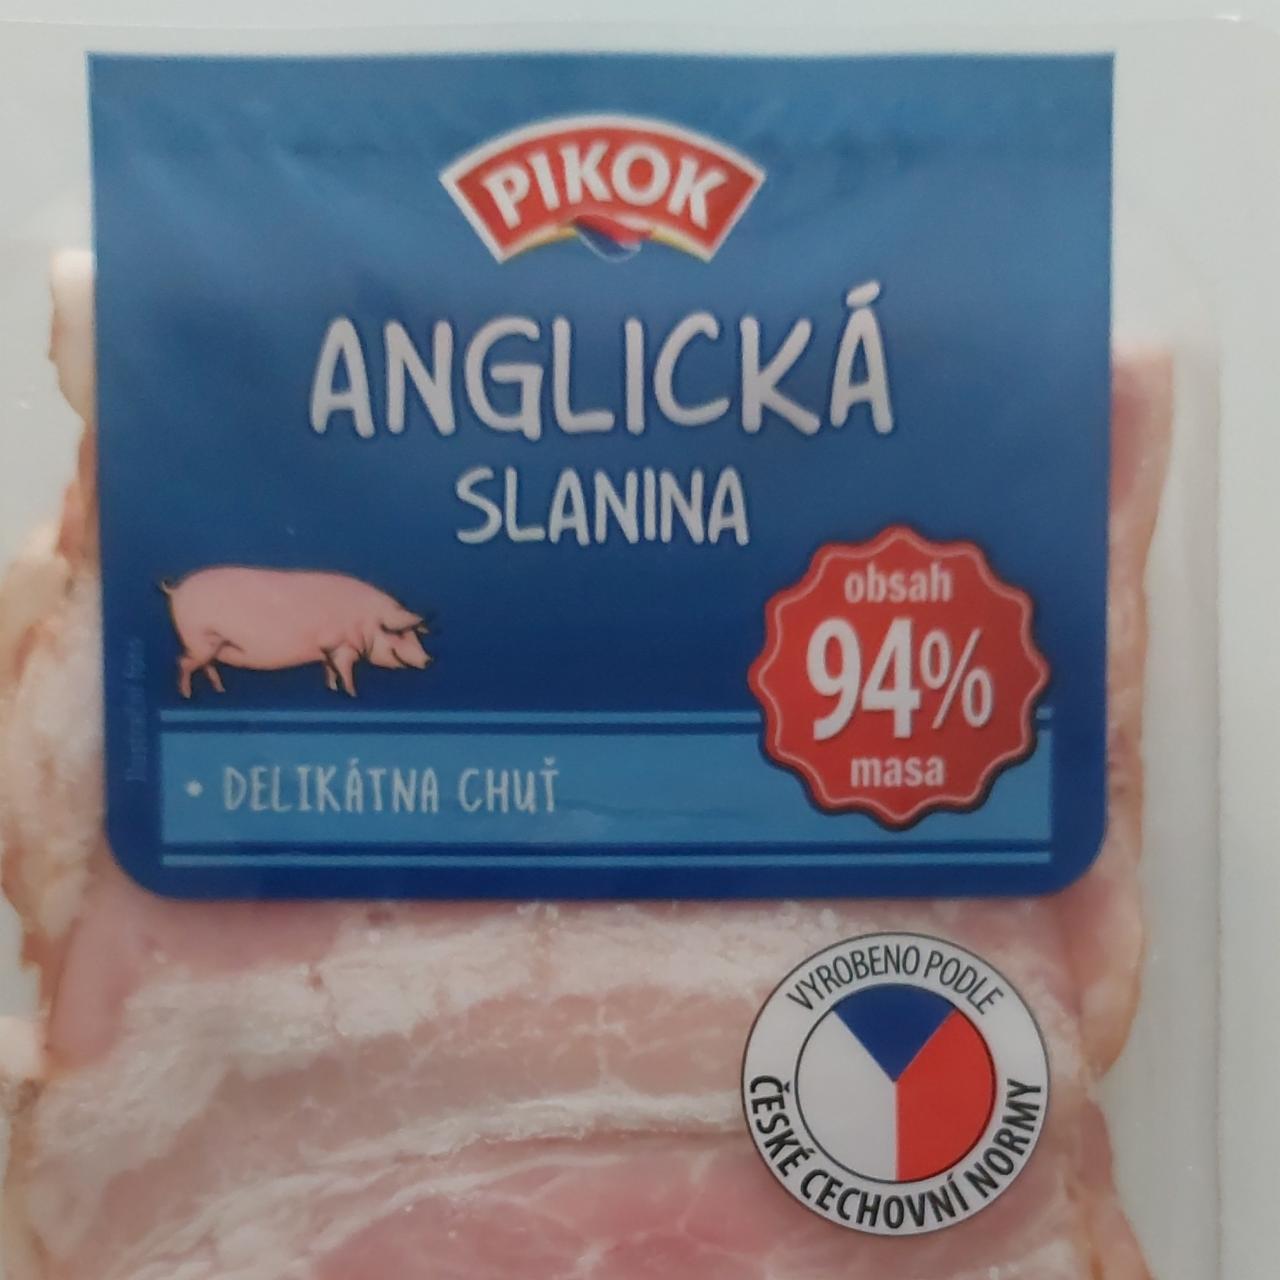 Fotografie - Anglická slanina 94% masa Pikok